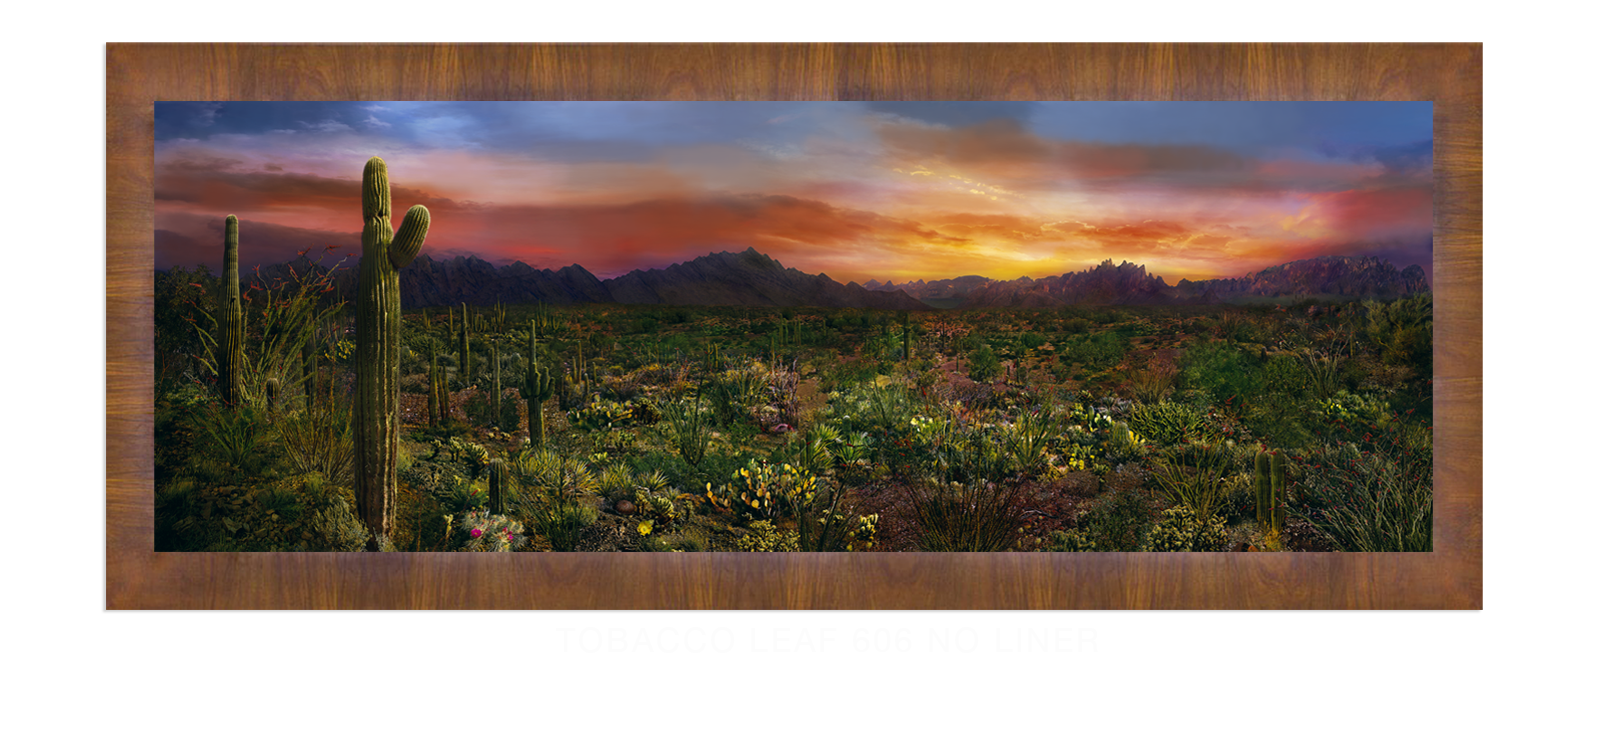 25EDEN VERNALIS Tobacco Leaf 606 w_No Liner T